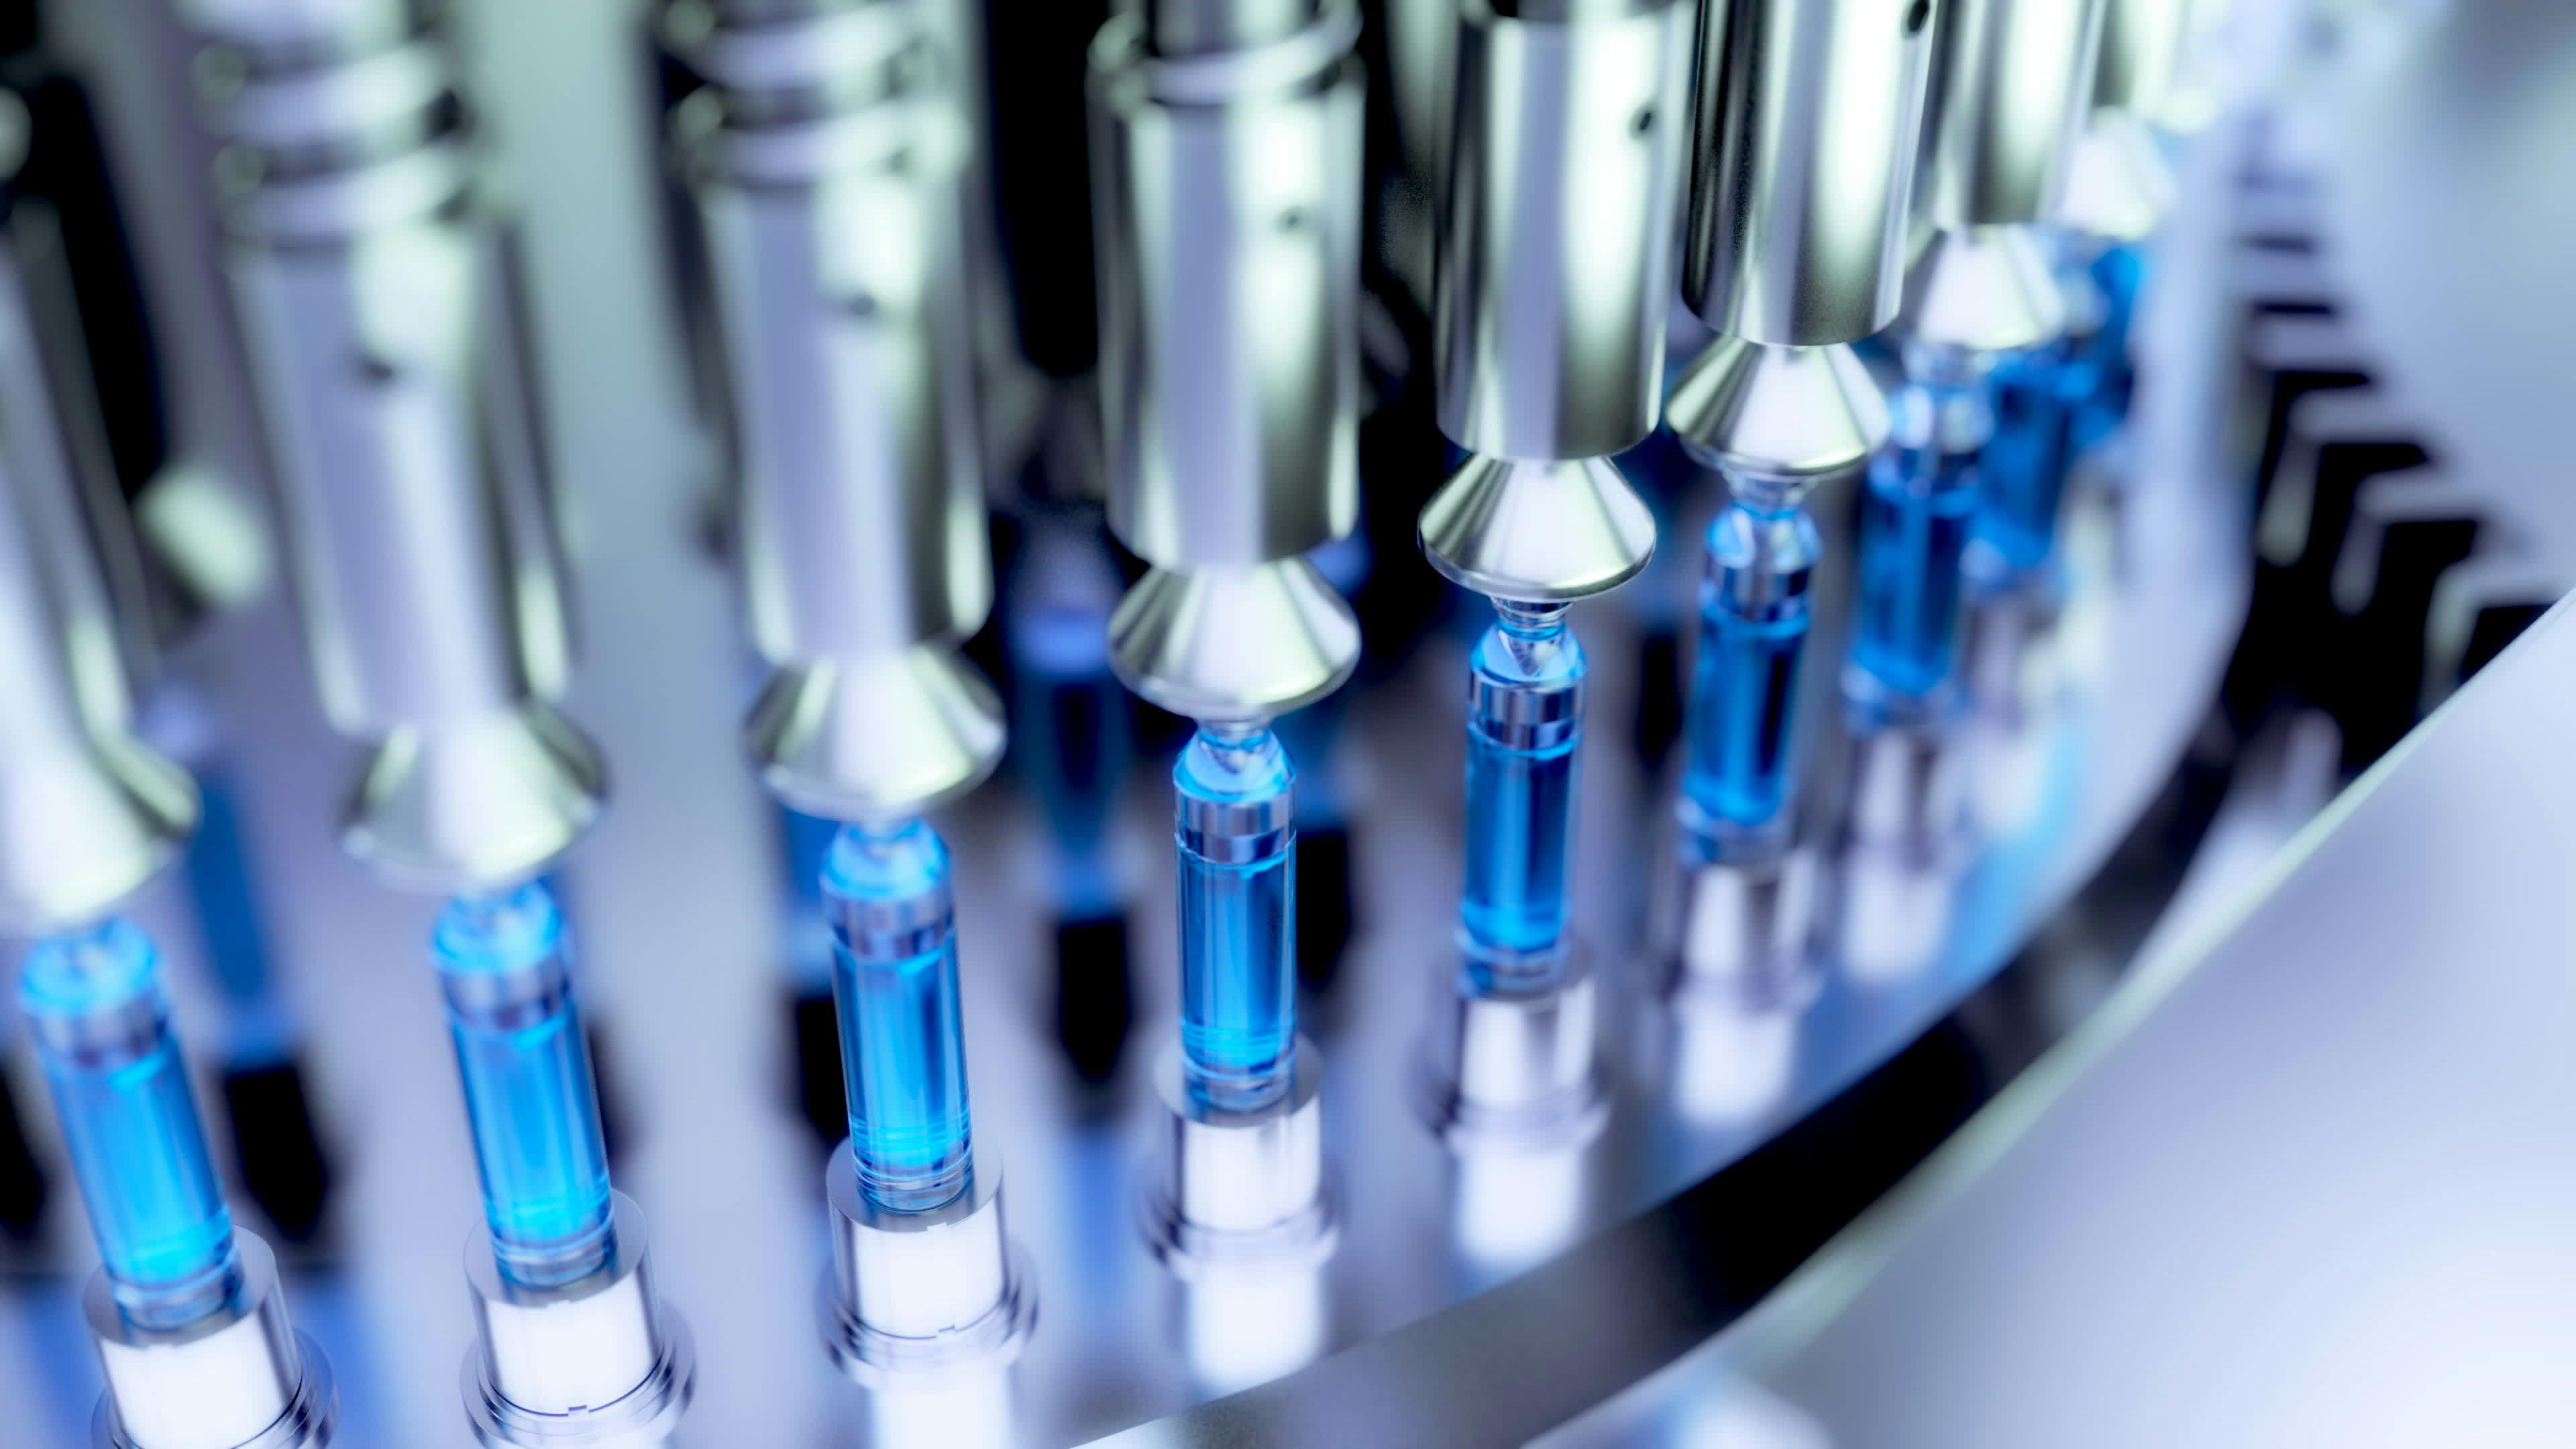 Pharmaceutical Optical Ampoule / Vial Inspection Machine. 3d illustration. Photo Credit: Adobe Stock/unlimit3d